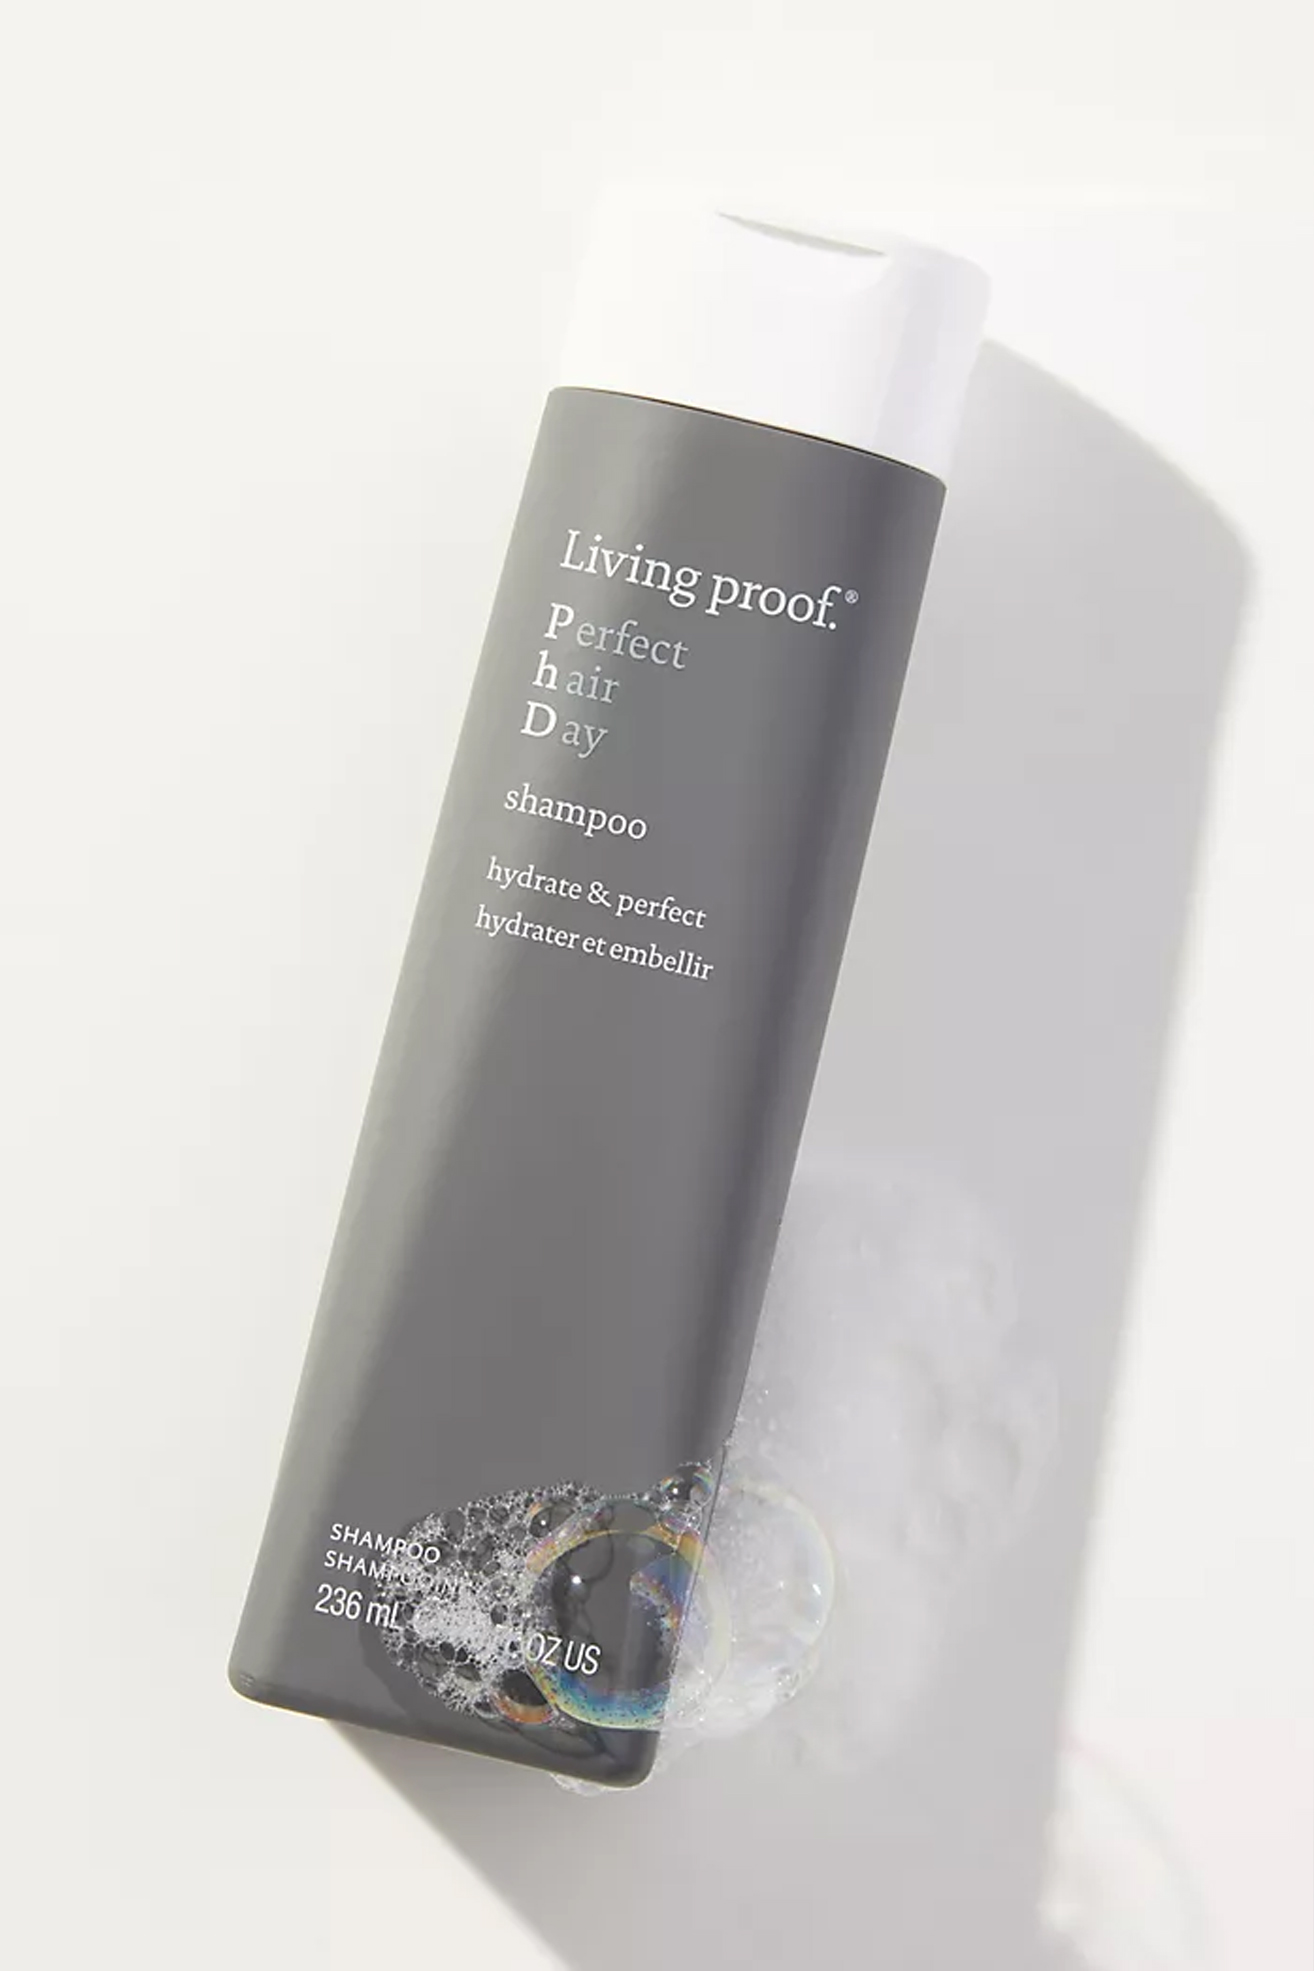 Living Proof PhD Shampoo